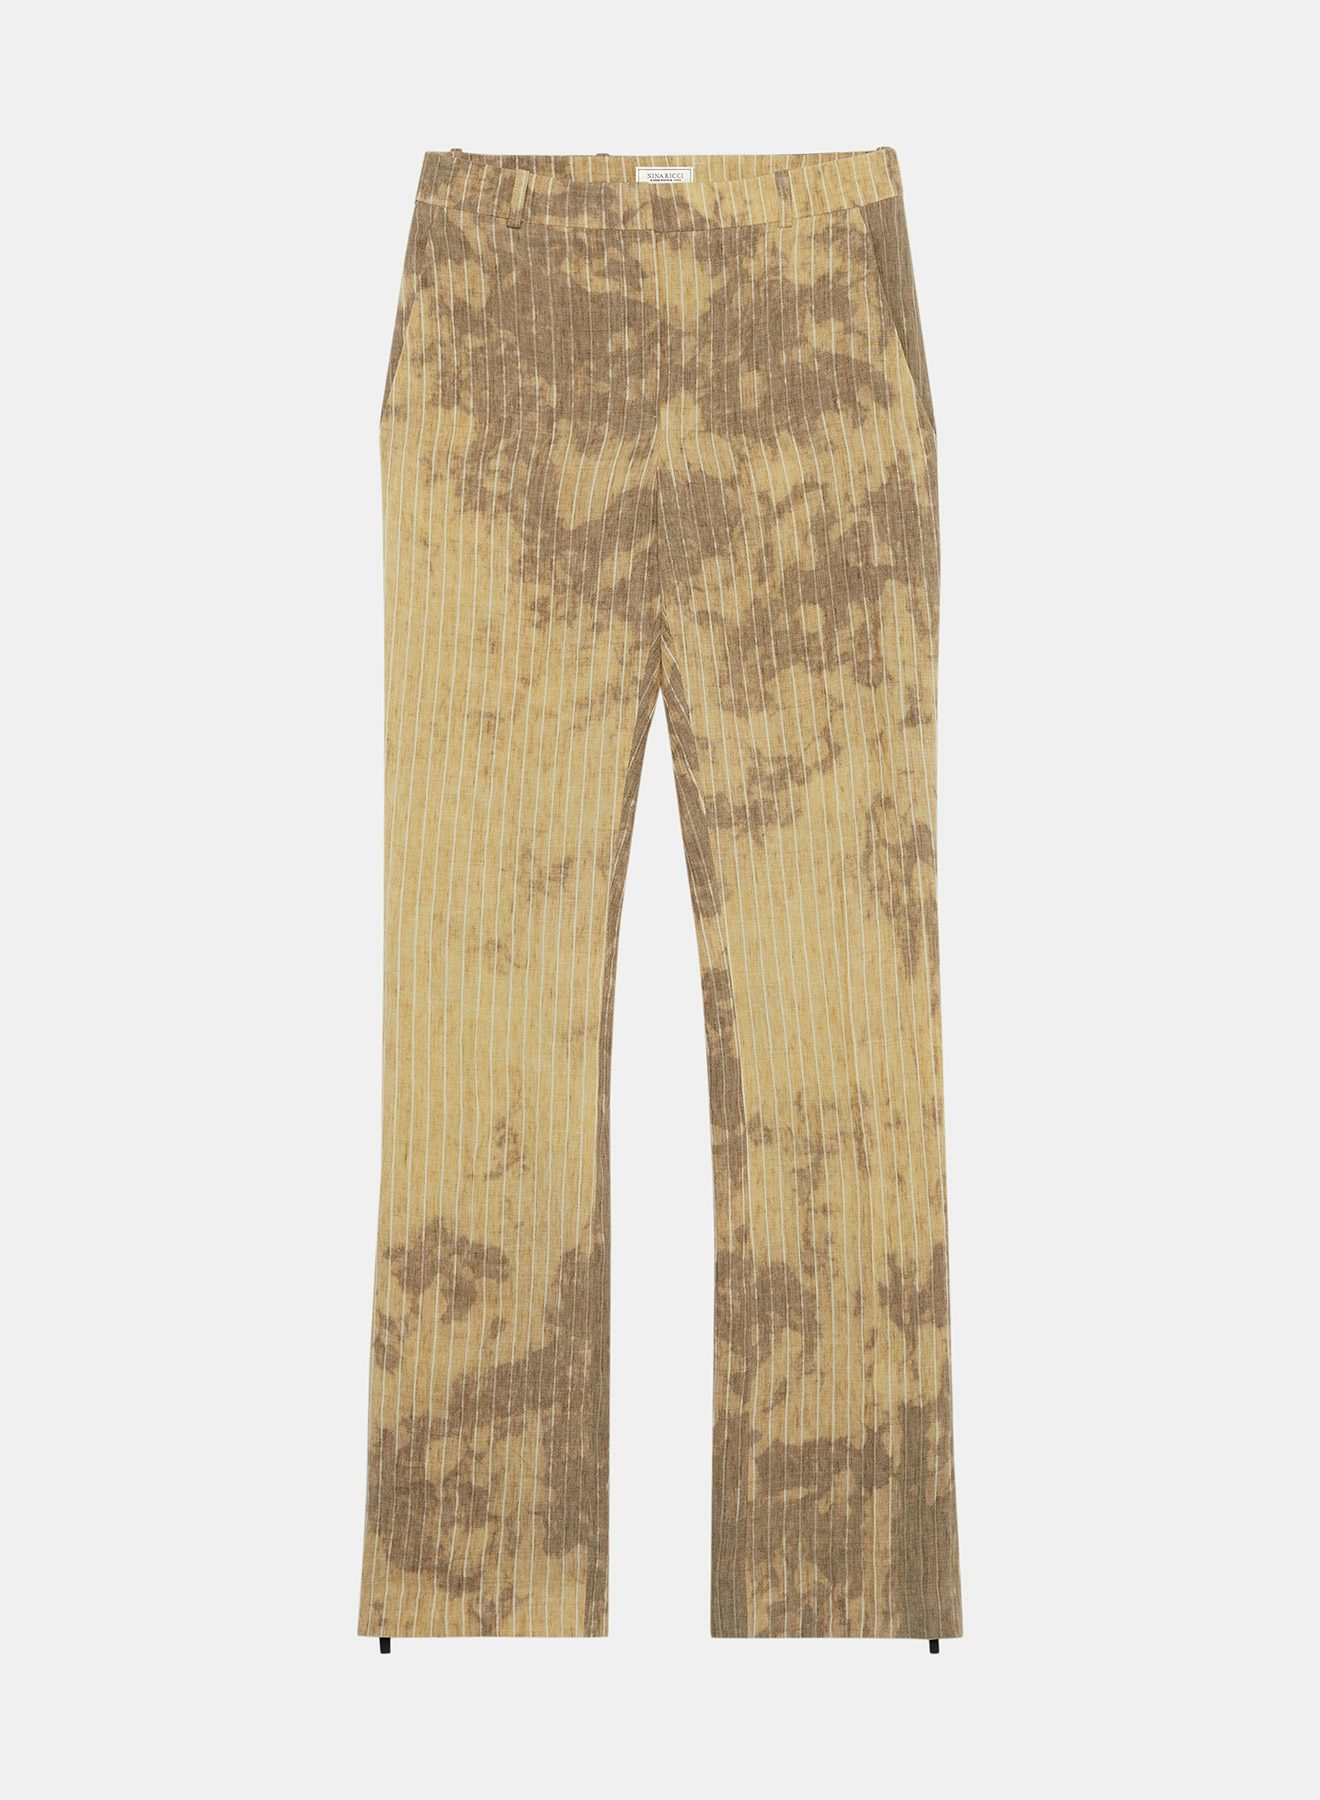 Pantalón recto de lino tie dye a rayas y cremalleras en el bajo de las perneras - Nina Ricci